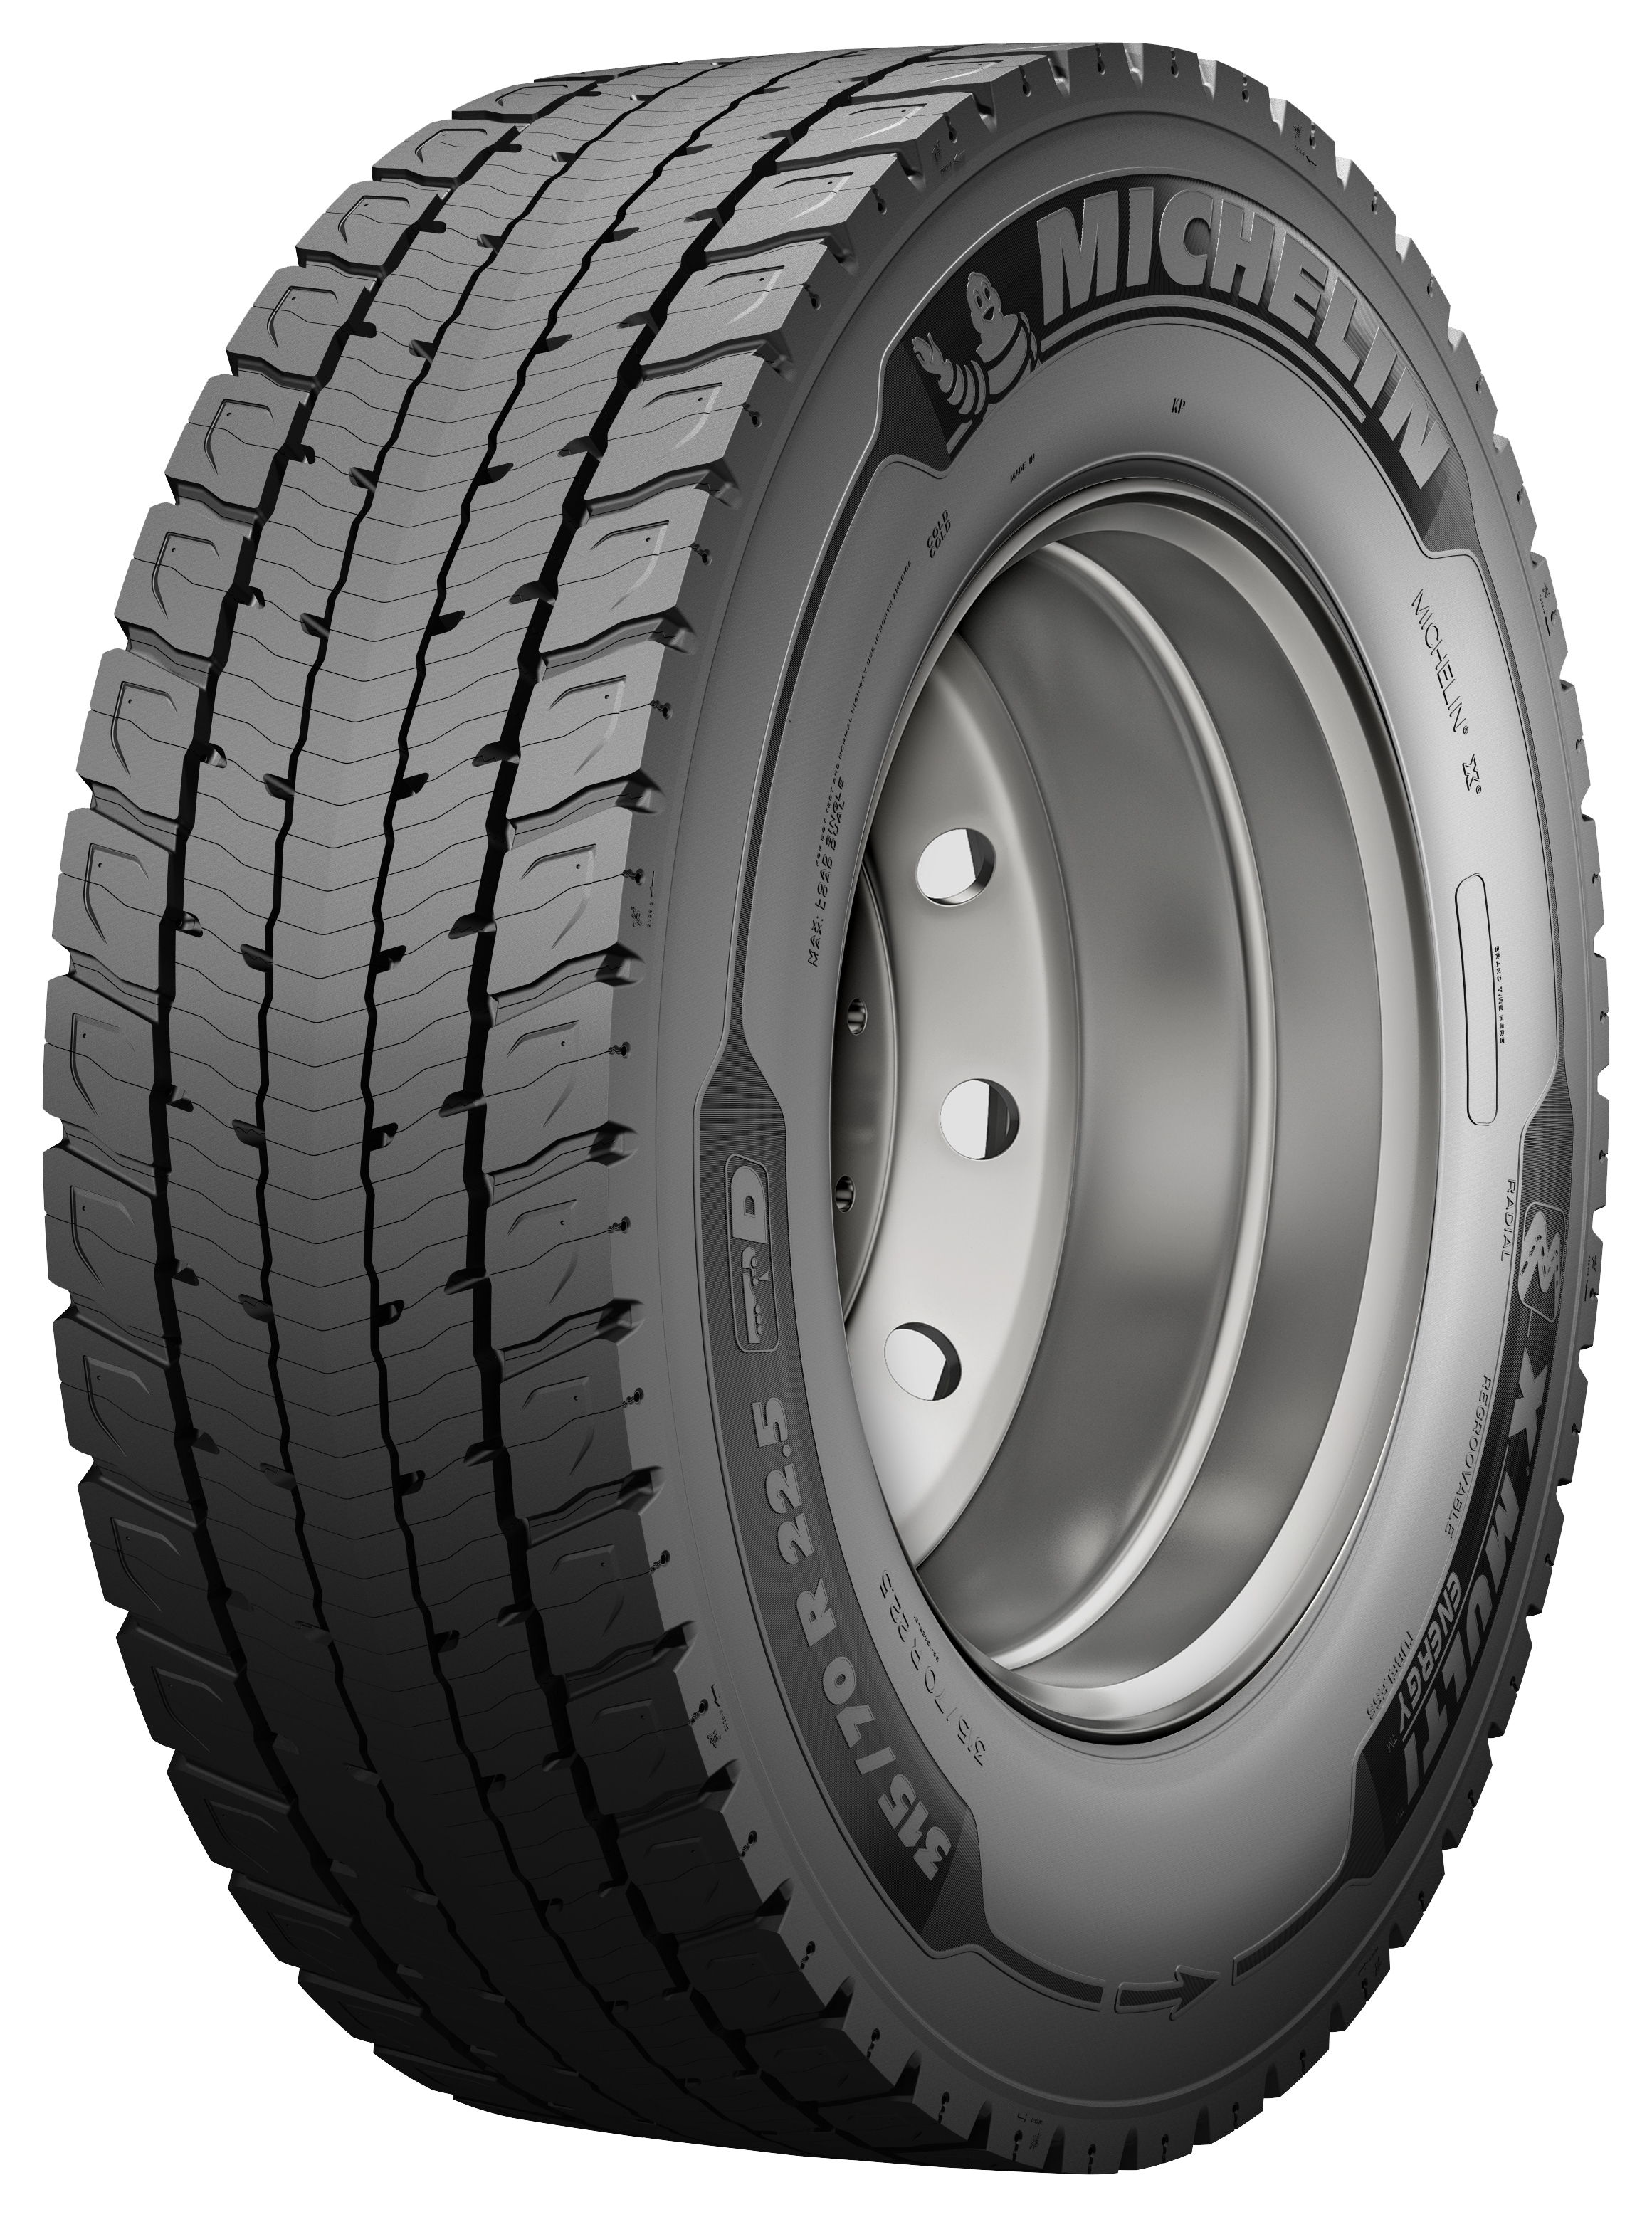 Gomme Nuove Michelin 315/70 R22.5 156/154L X MULTI ENERGY D 70 M+S (8.00mm) pneumatici nuovi Estivo